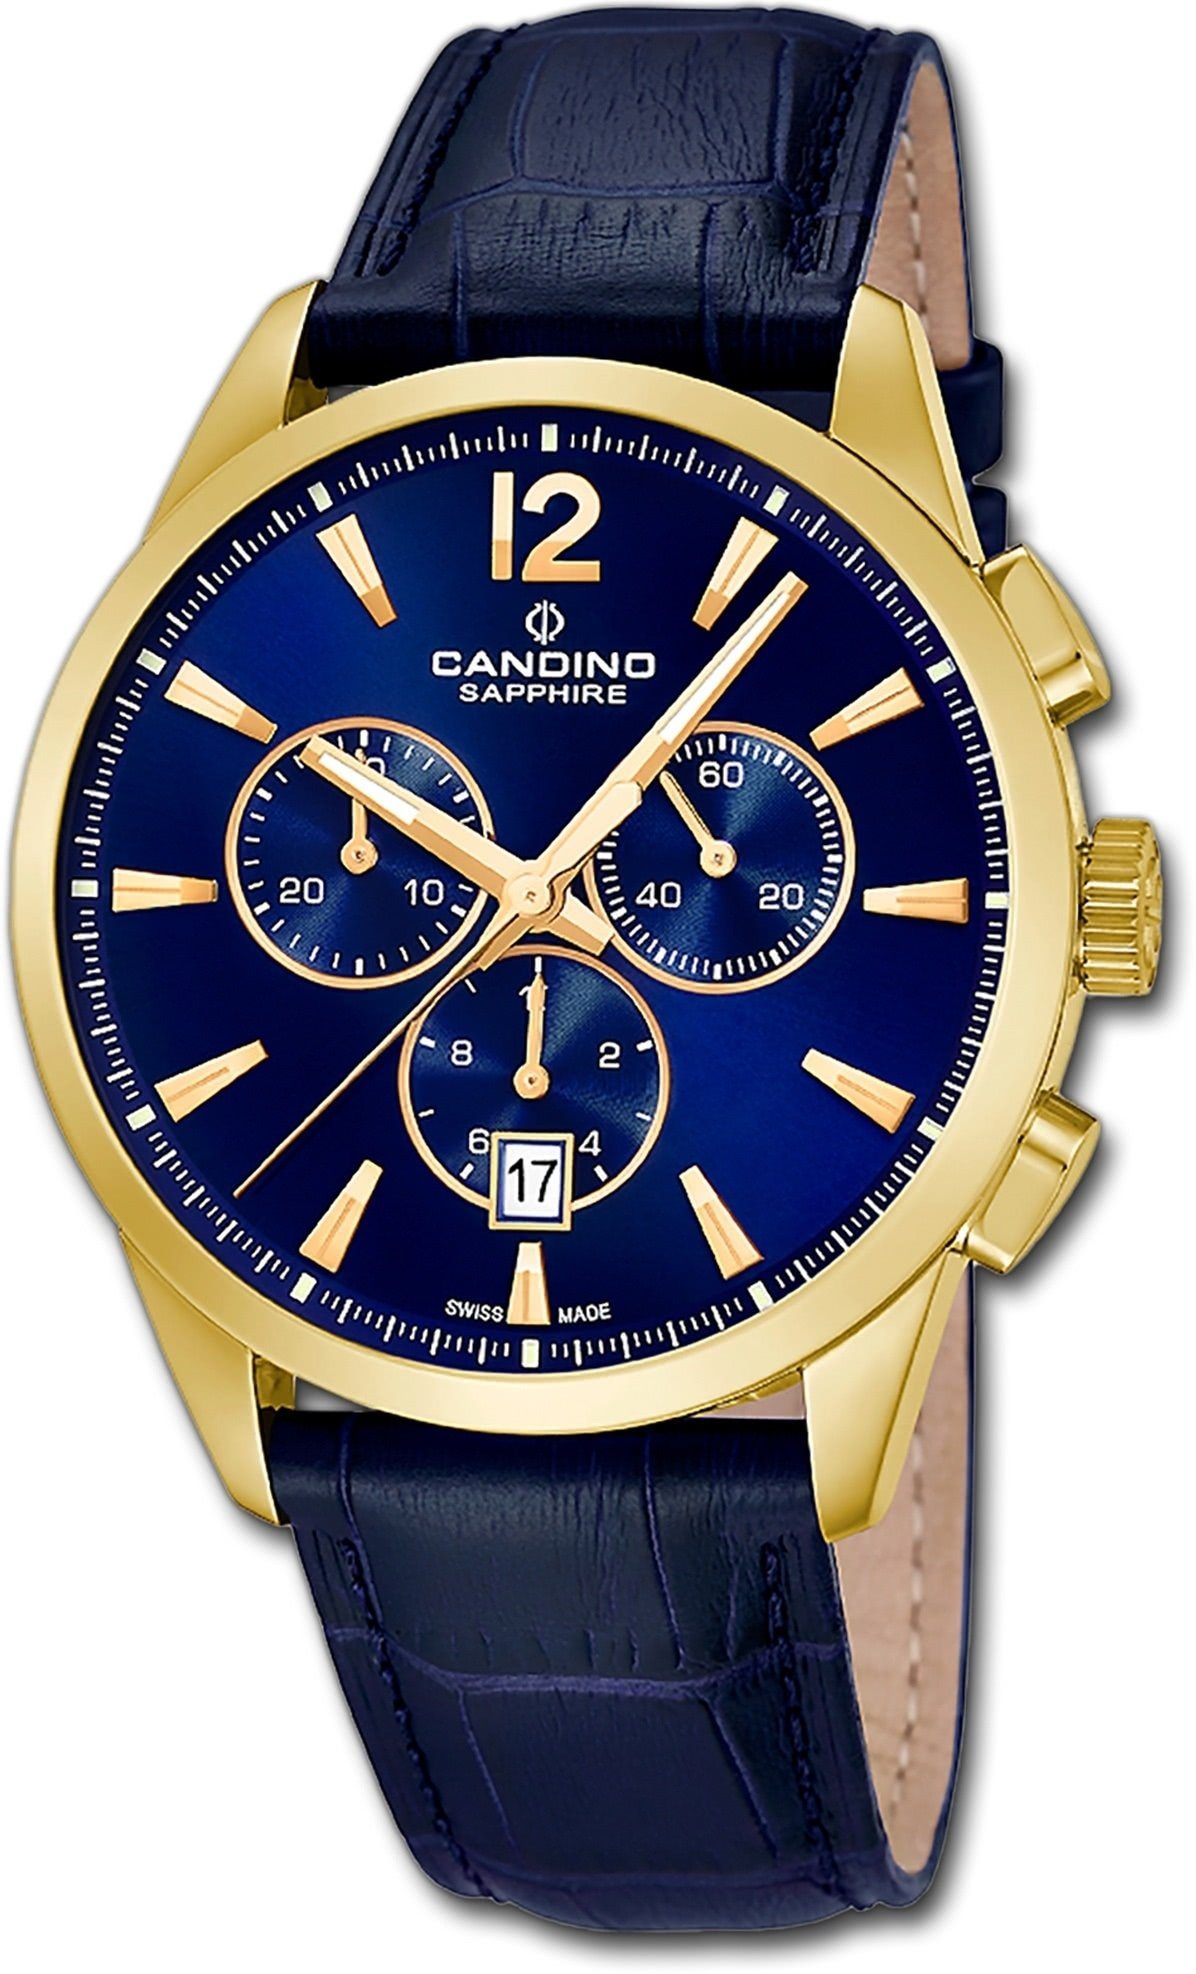 Candino Quarzuhr Candino Herrenuhr Sport C4518/F, blau Herren Armbanduhr rund, Edelstahlarmband